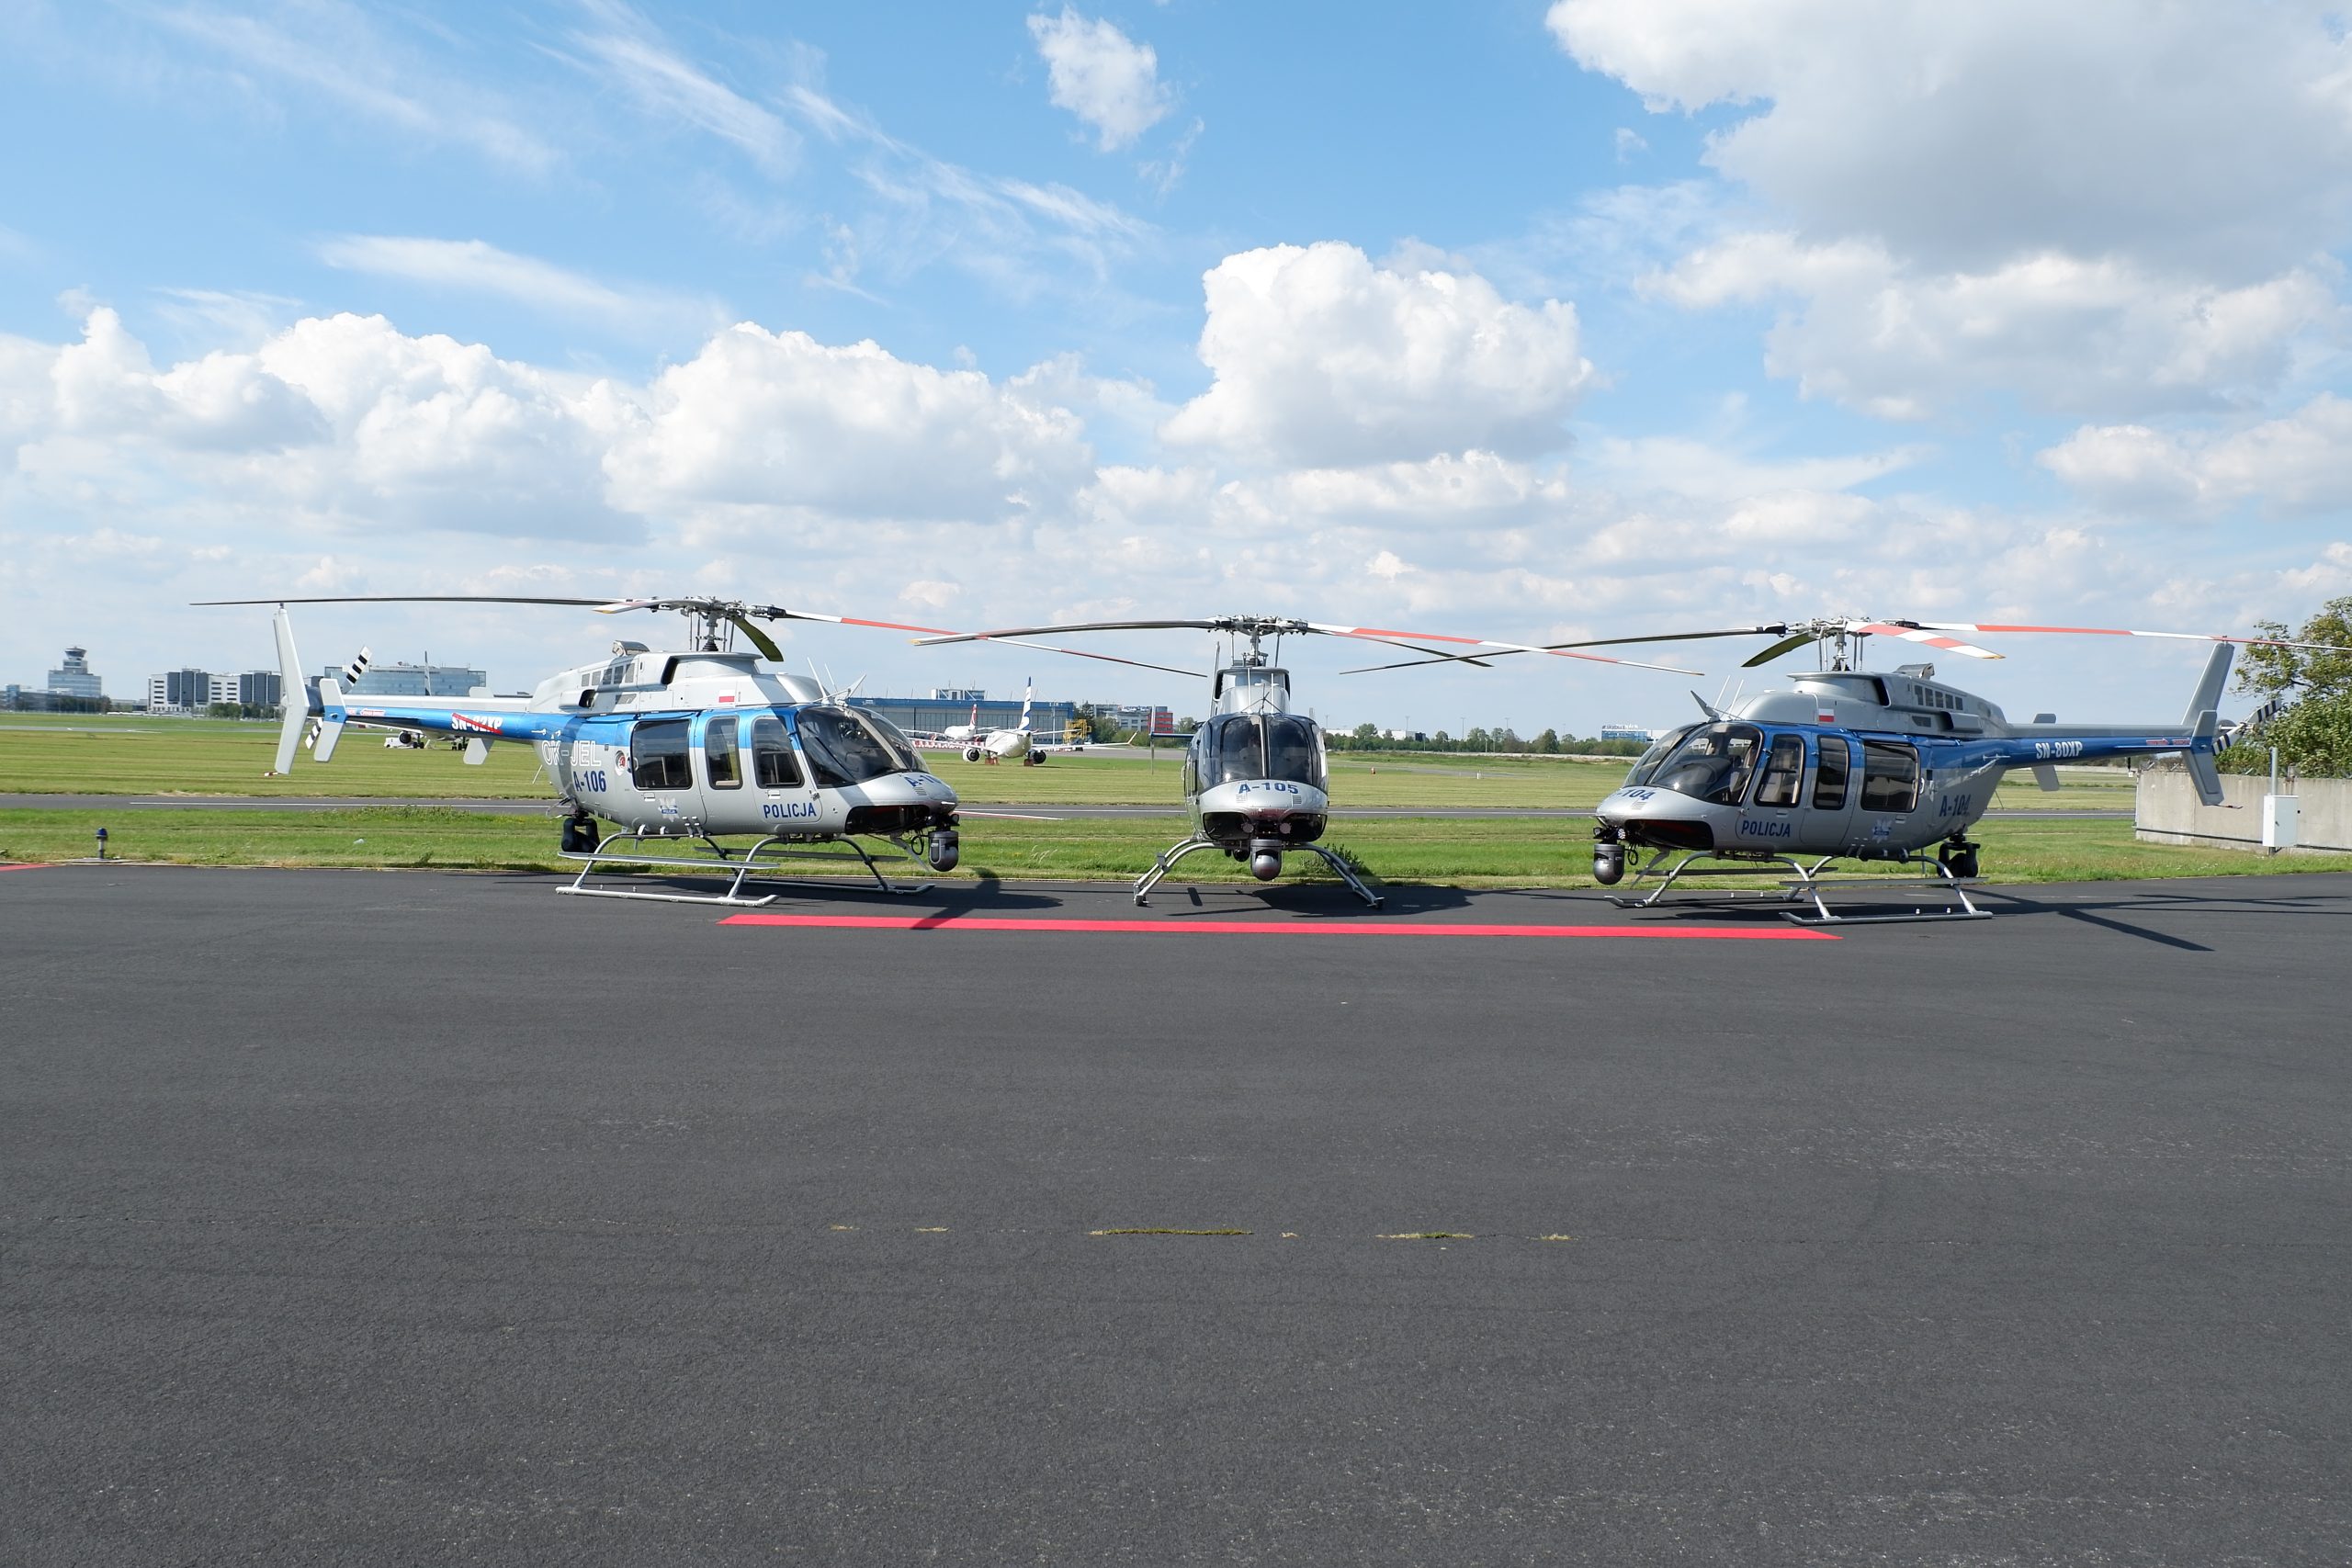 Bell zatwierdza sprzedaż czterech śmigłowców 407GXi dla Policji – Helicopter Investor